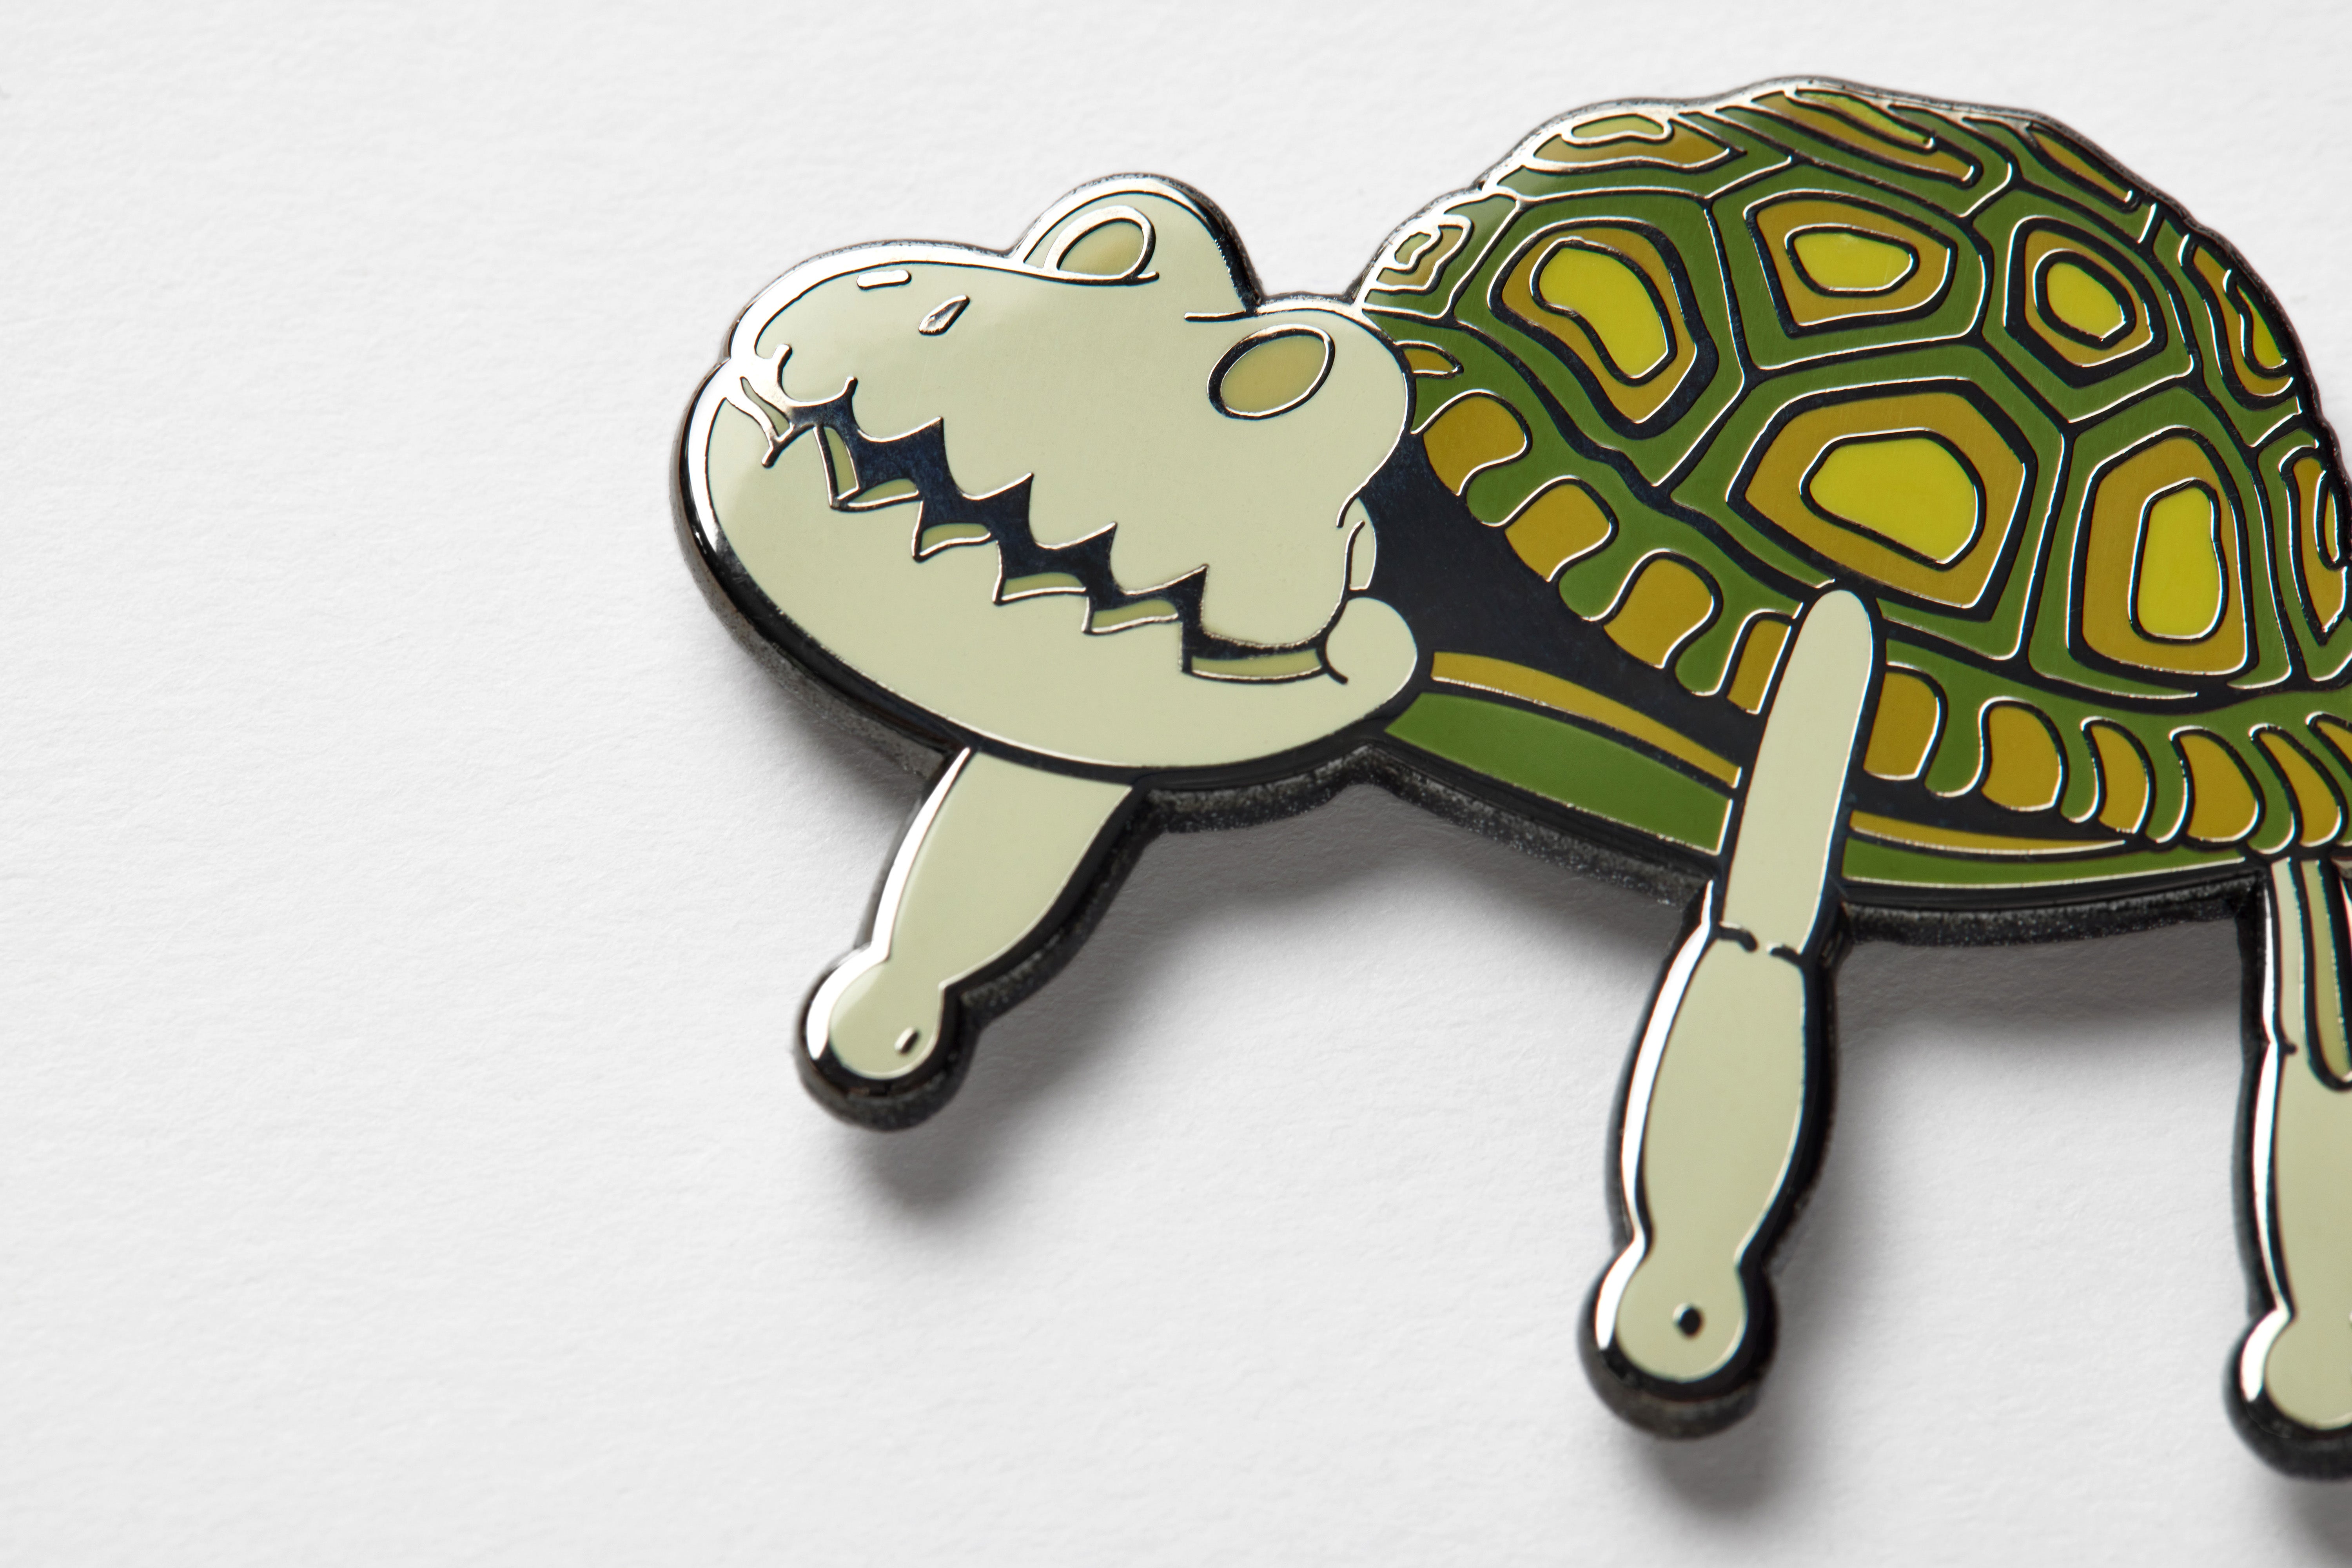 Coraline turtle toy enamel pin